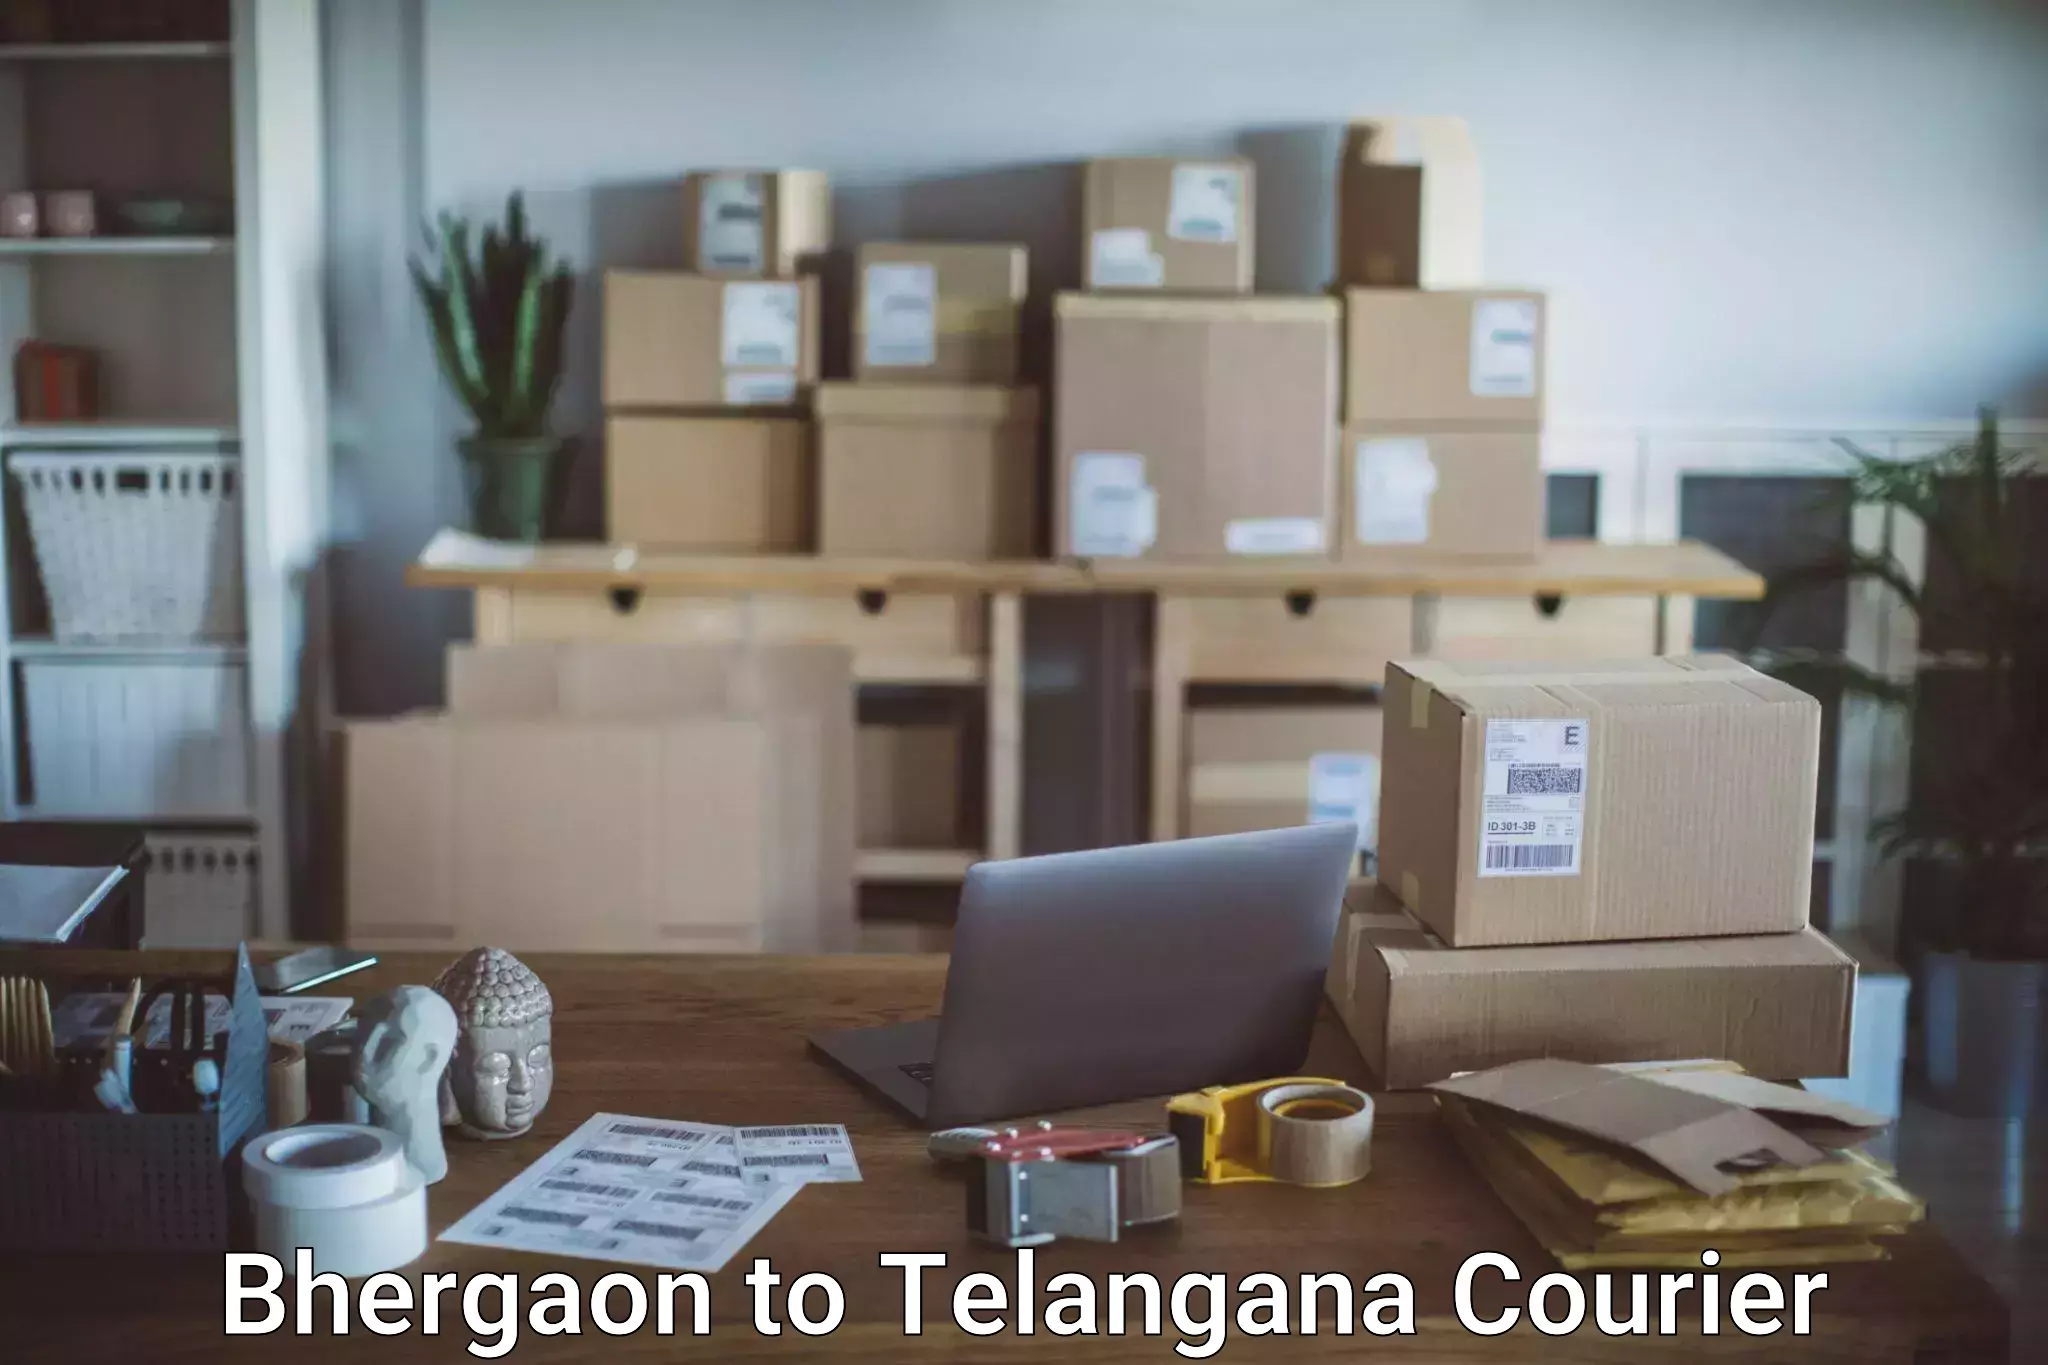 Luggage delivery app Bhergaon to Ibrahimpatnam